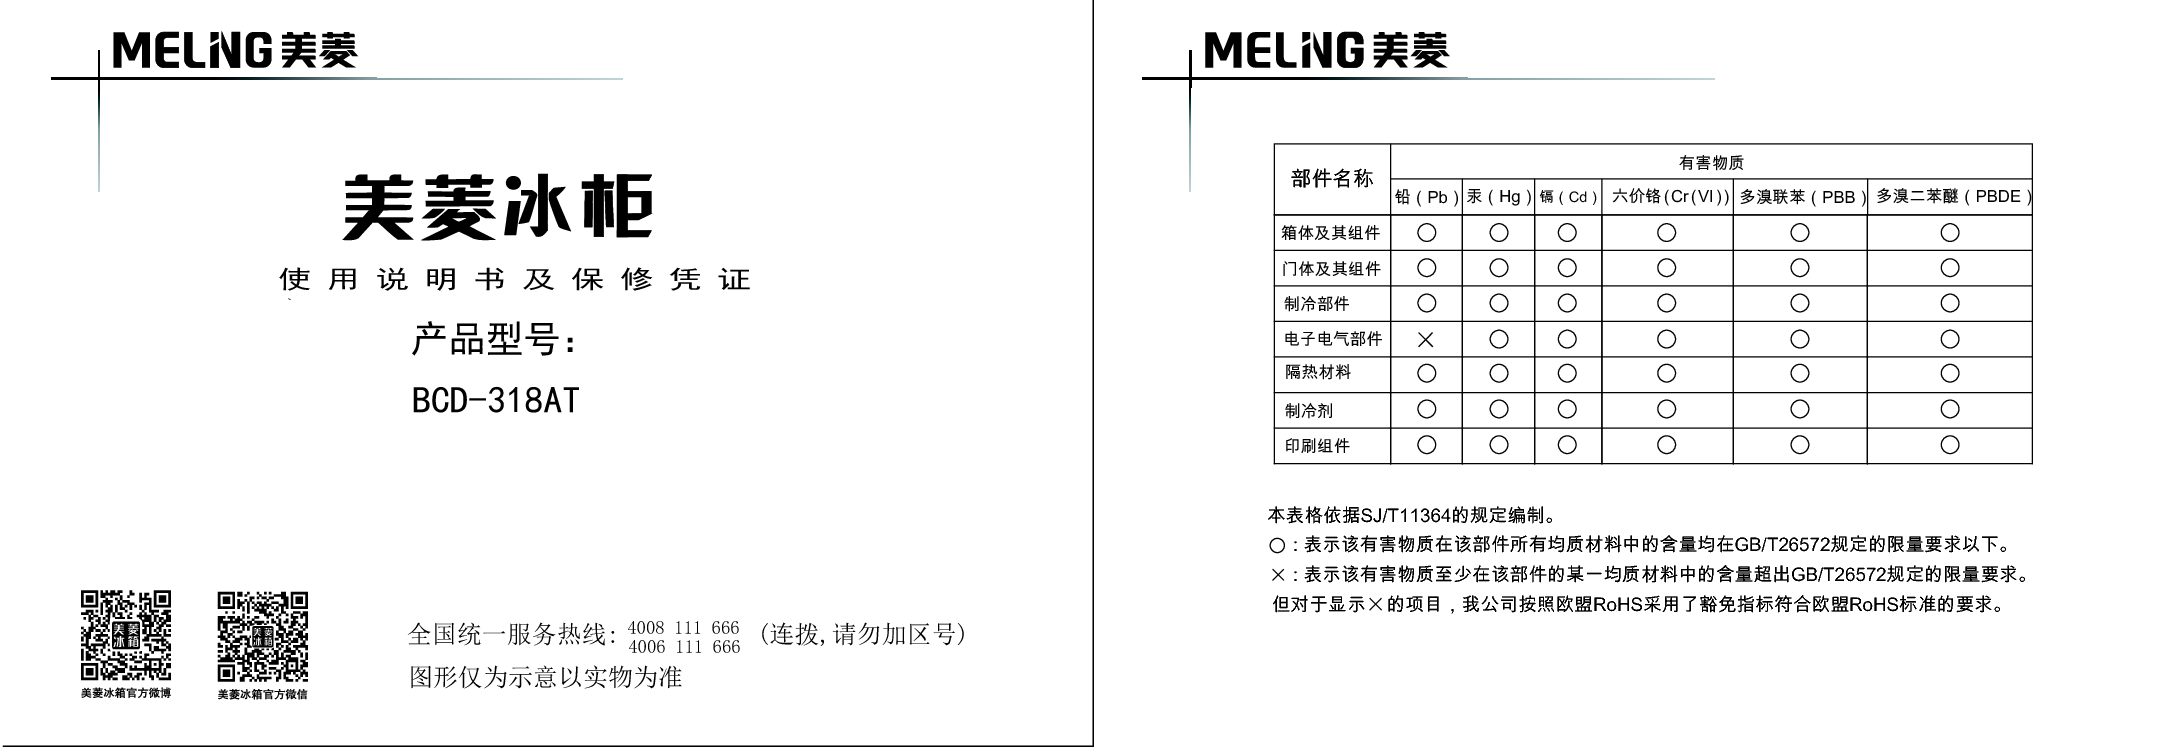 美菱 Meiling BCD-318AT 使用说明书 封面